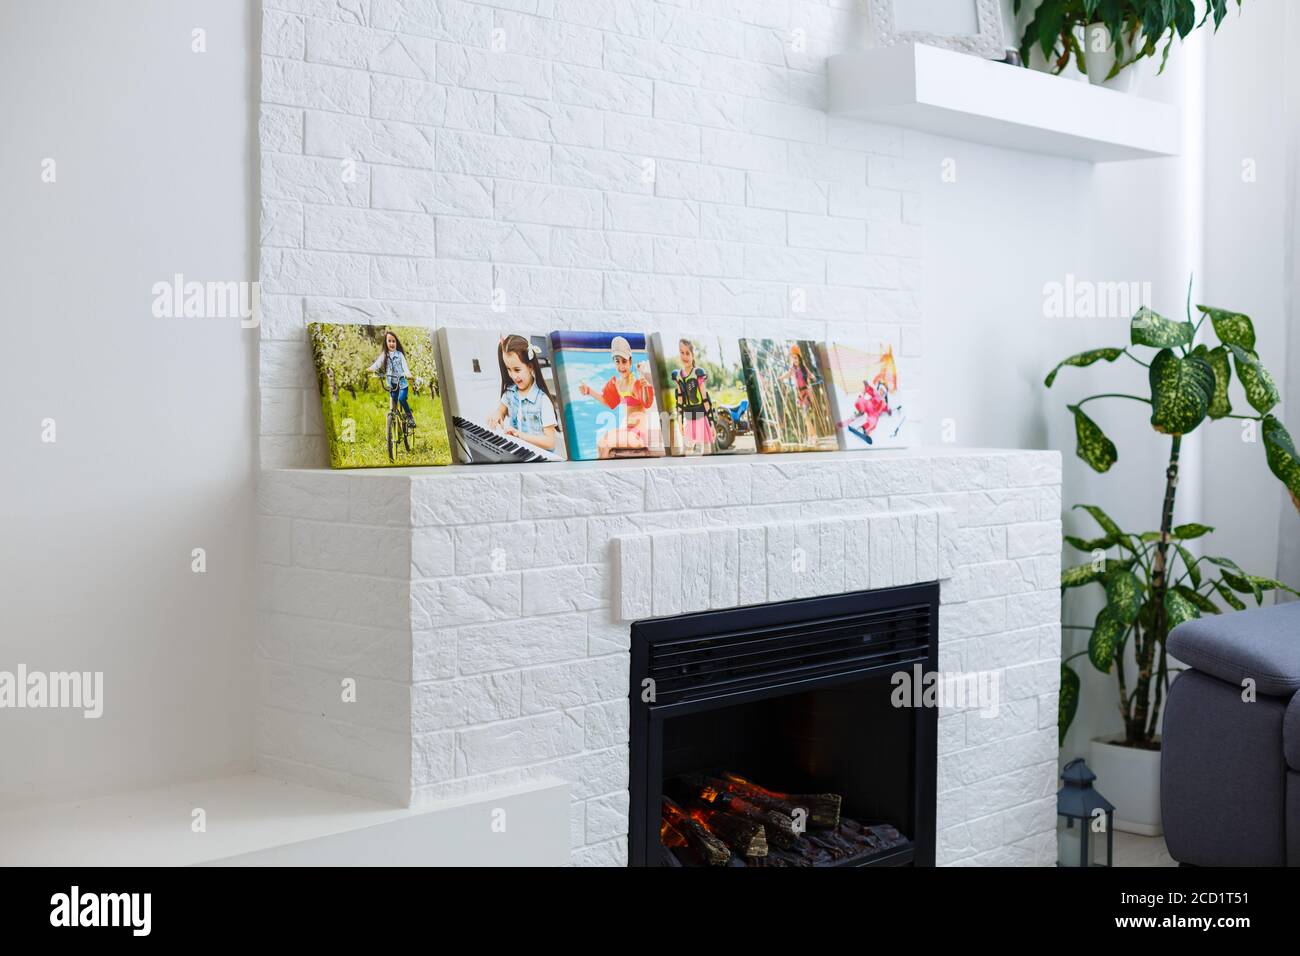 Cornici collage con poster floreali su pareti in mattoni testurizzati, su divano moderno, arredamento interno mock up Foto Stock